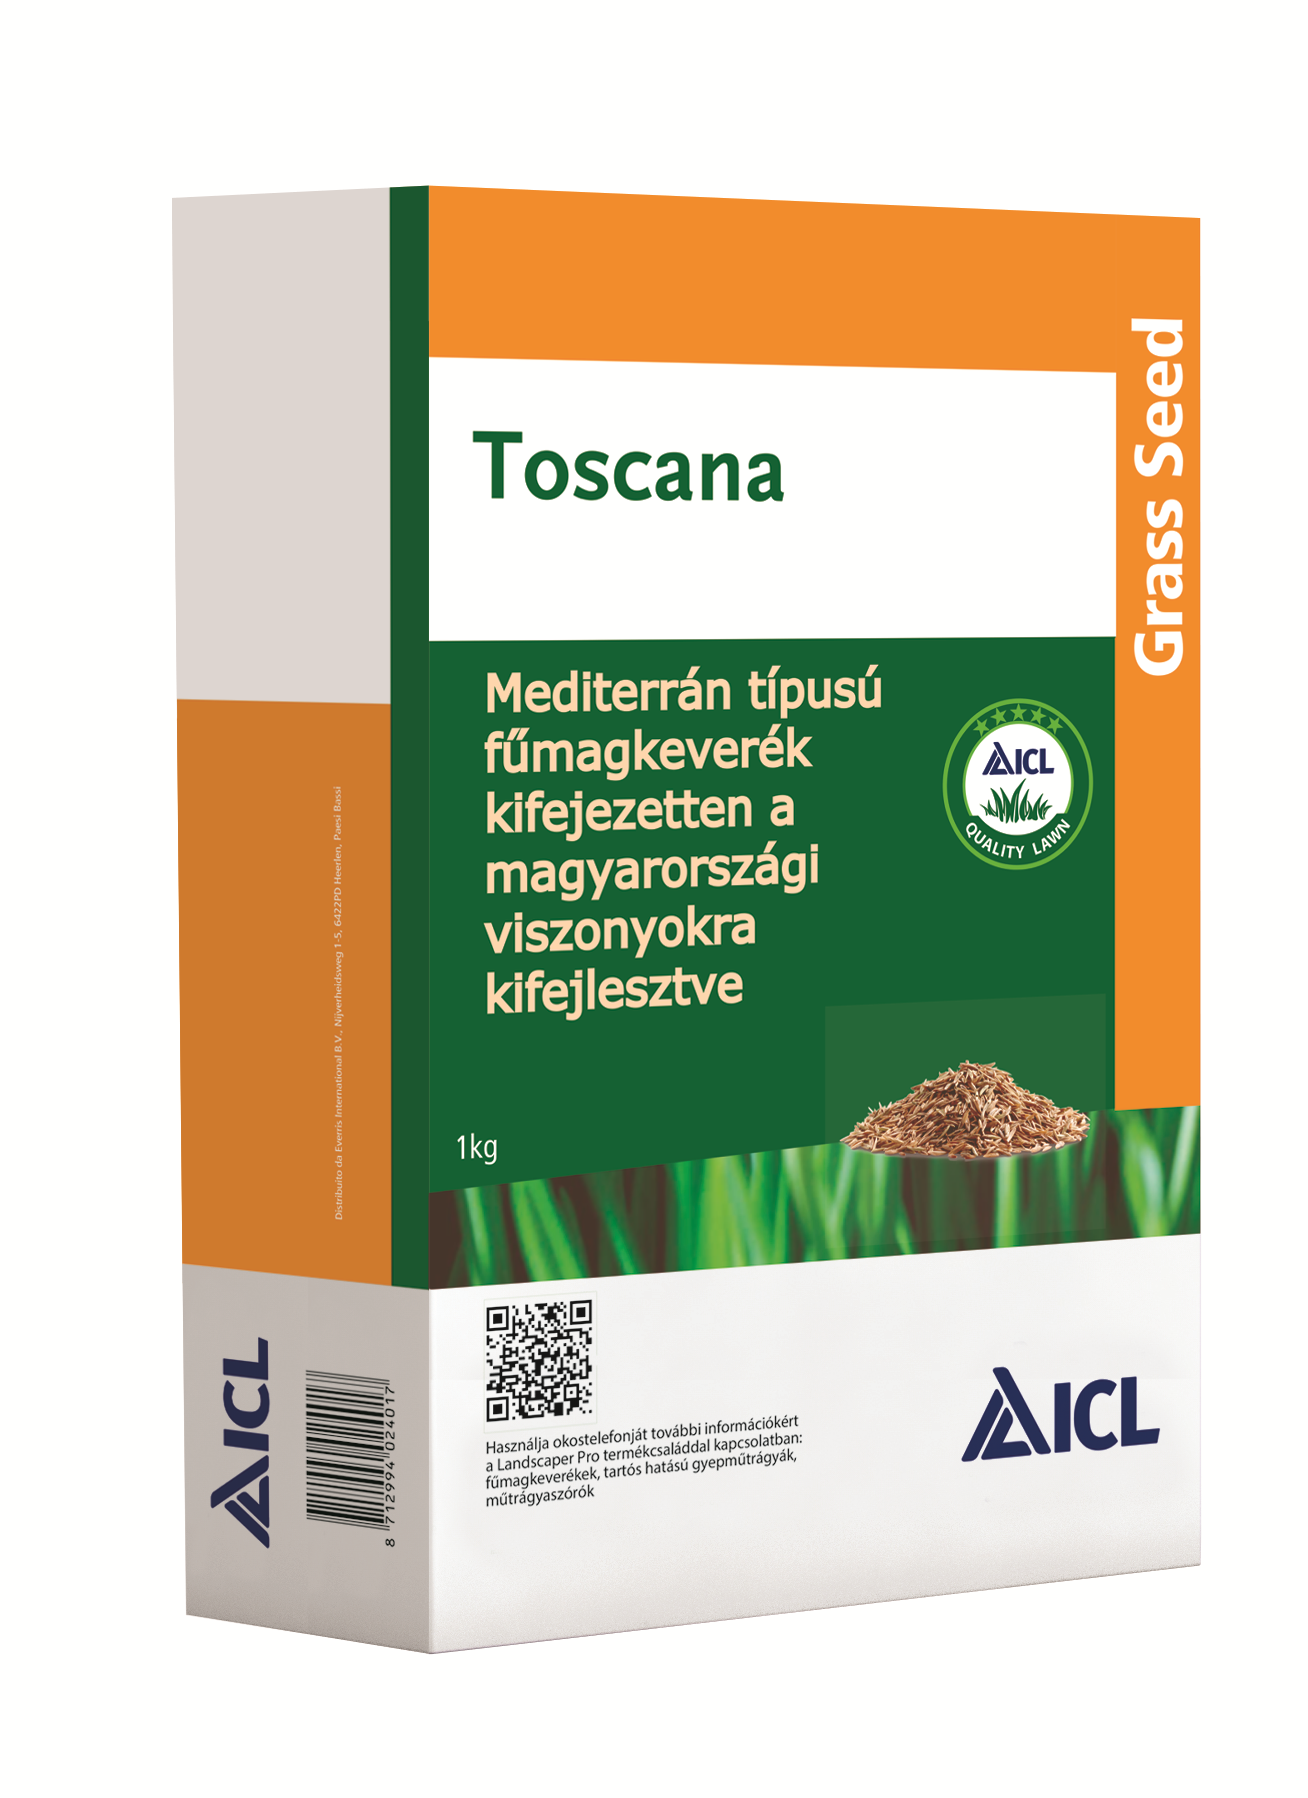 Semințe de iarbă ICL Toscana (tip mediteranean) 1 kg